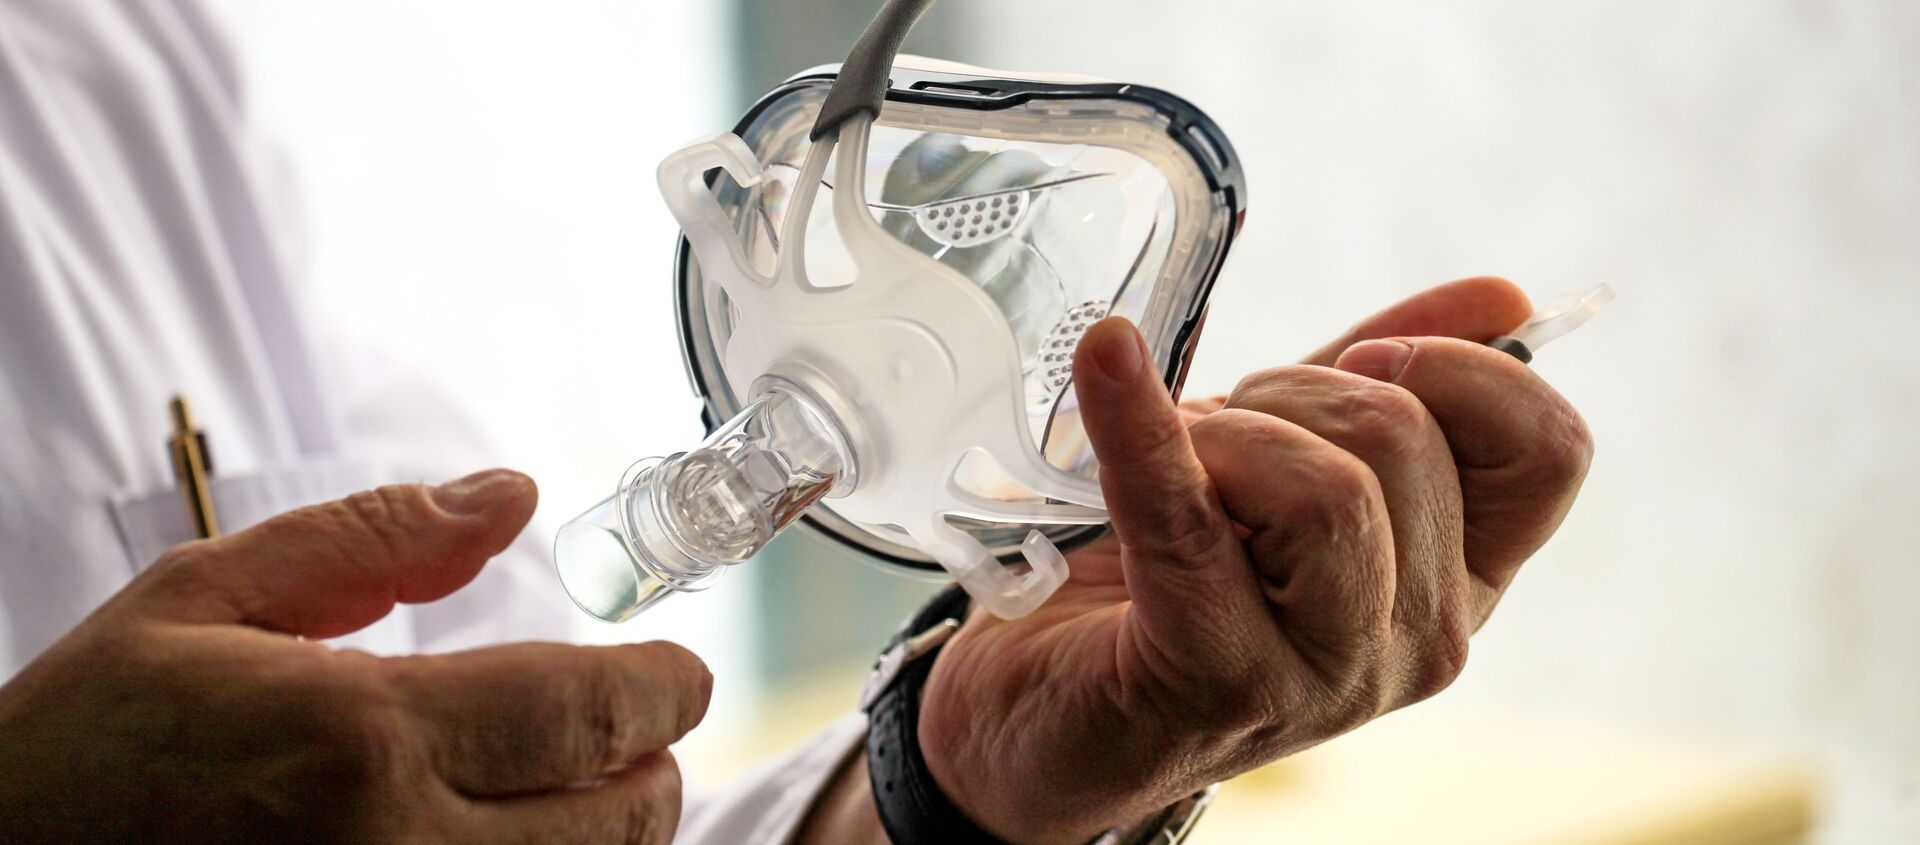 Врач держит в руках маску для искусственной вентиляции легких, архивное фото  - Sputnik Արմենիա, 1920, 23.05.2021